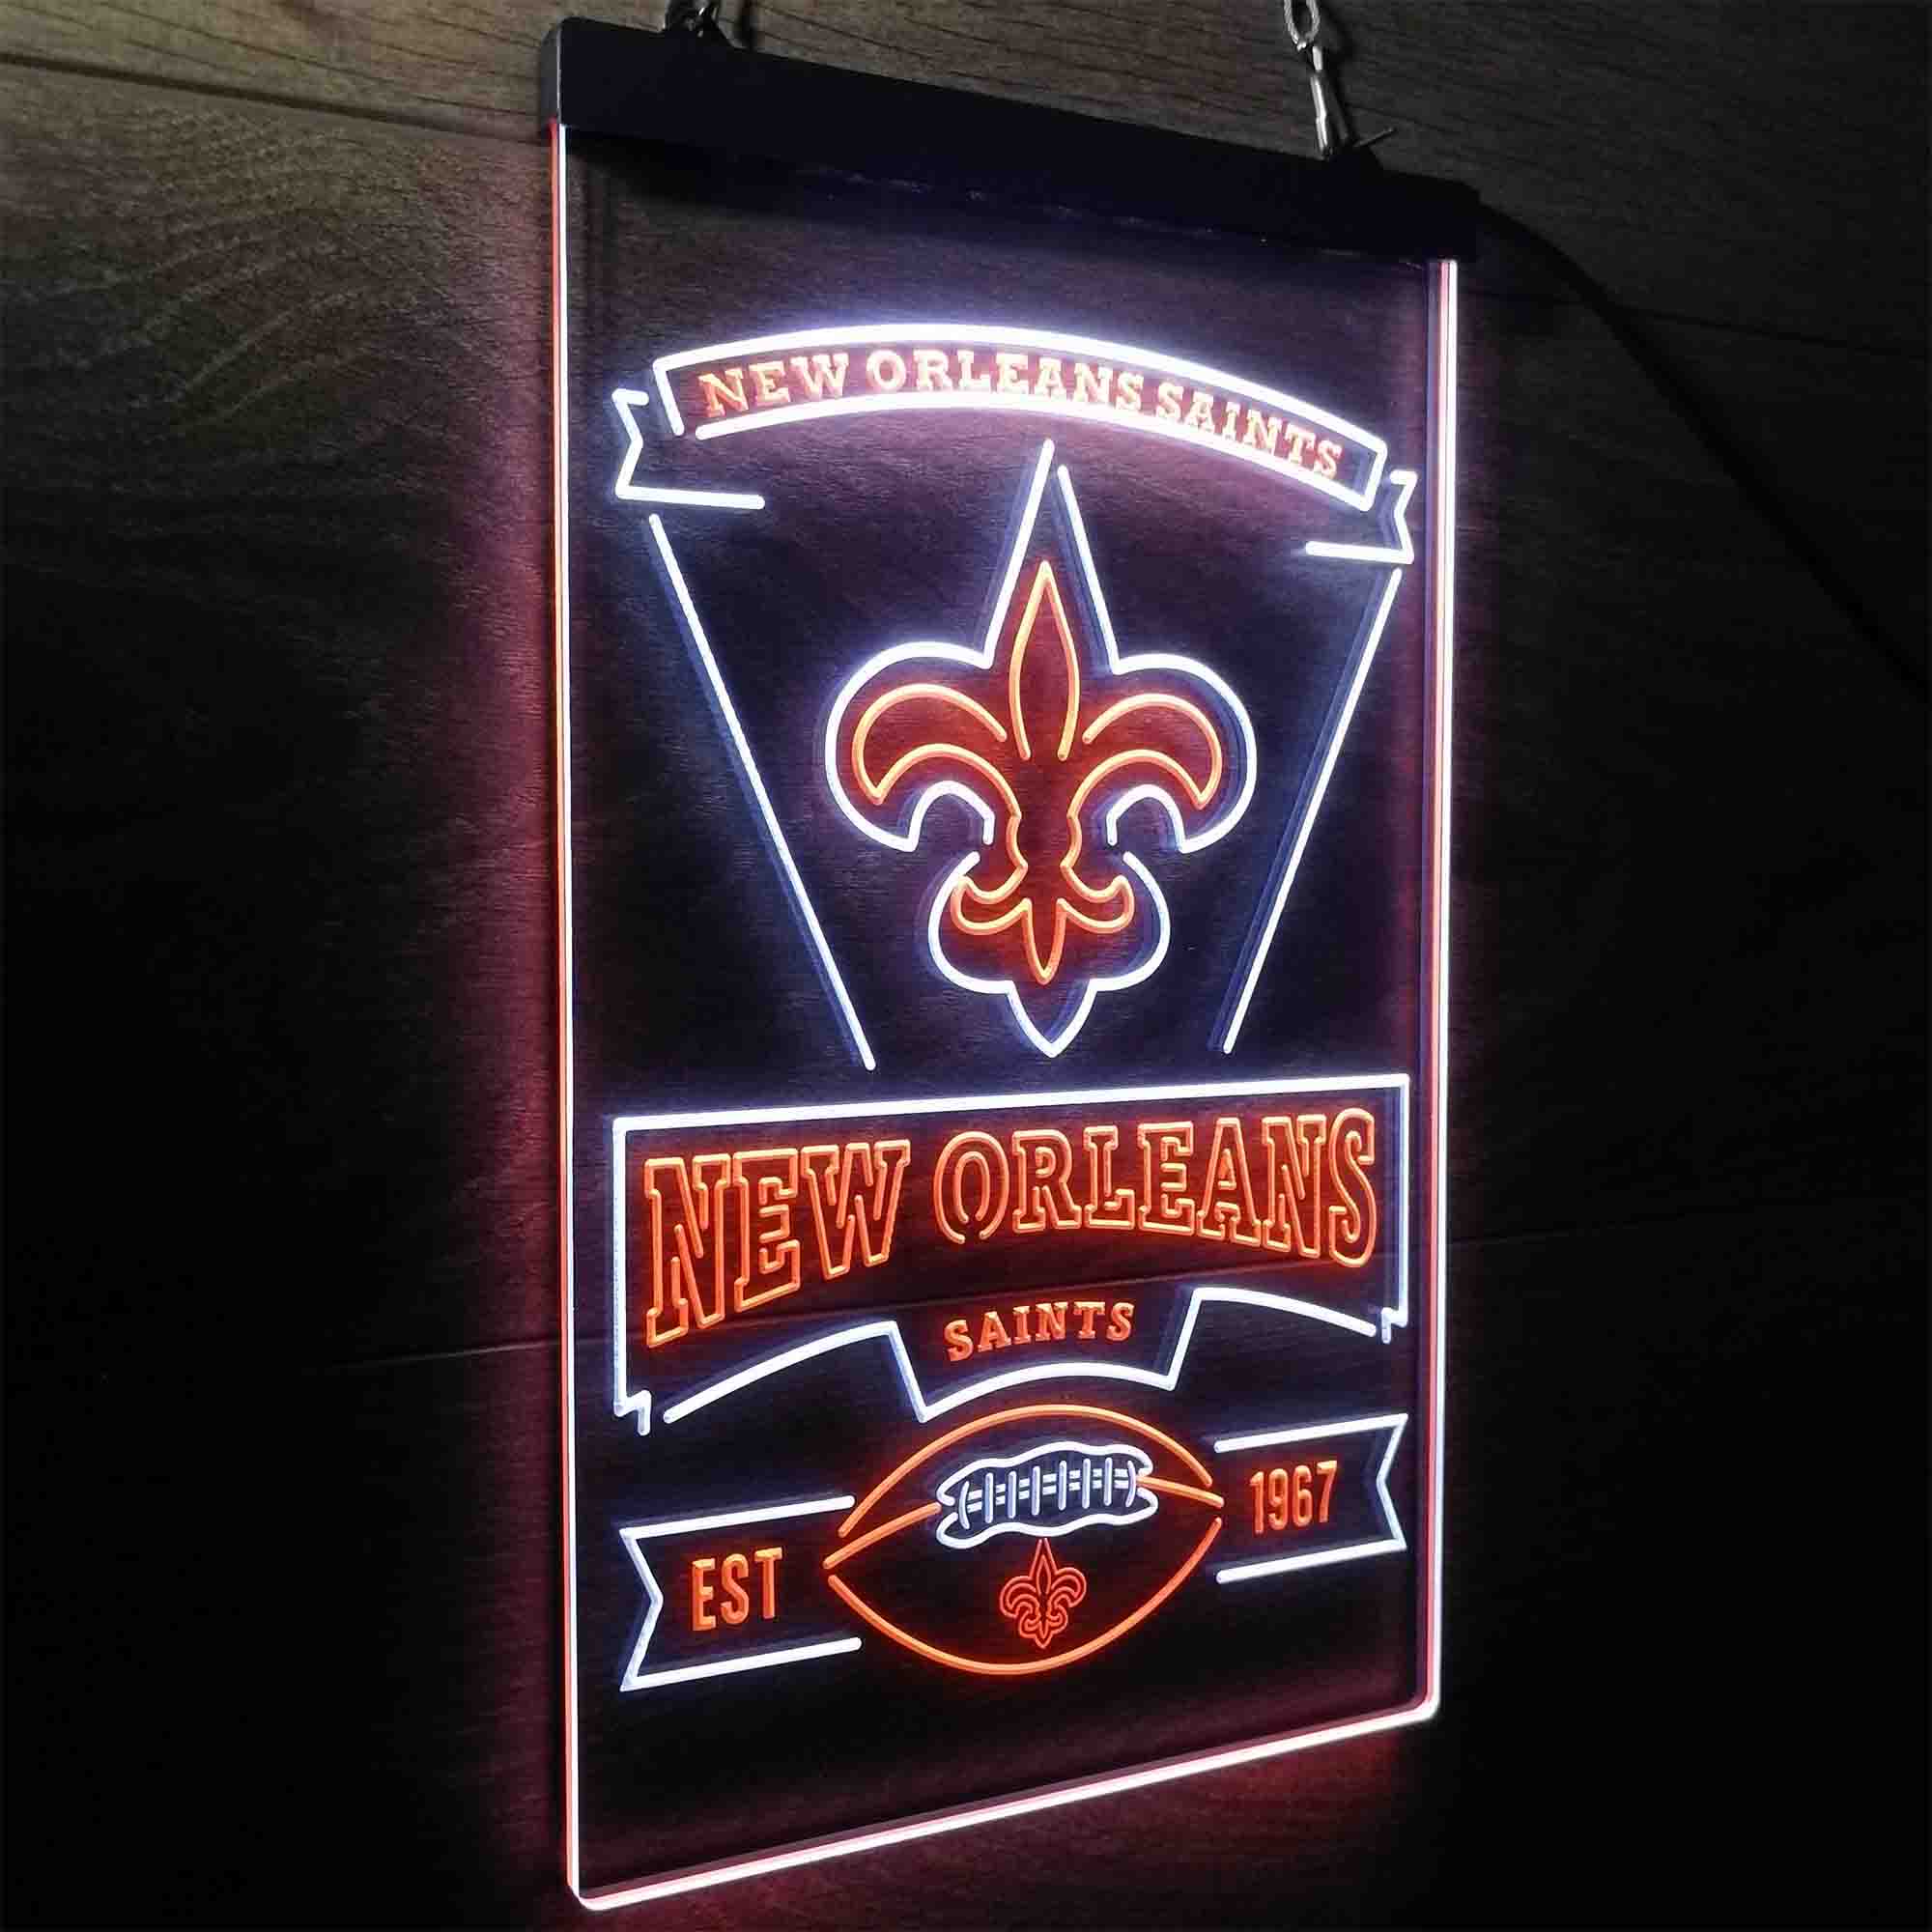 New Orleans Saints Est. 1967 Neon-Like LED Sign